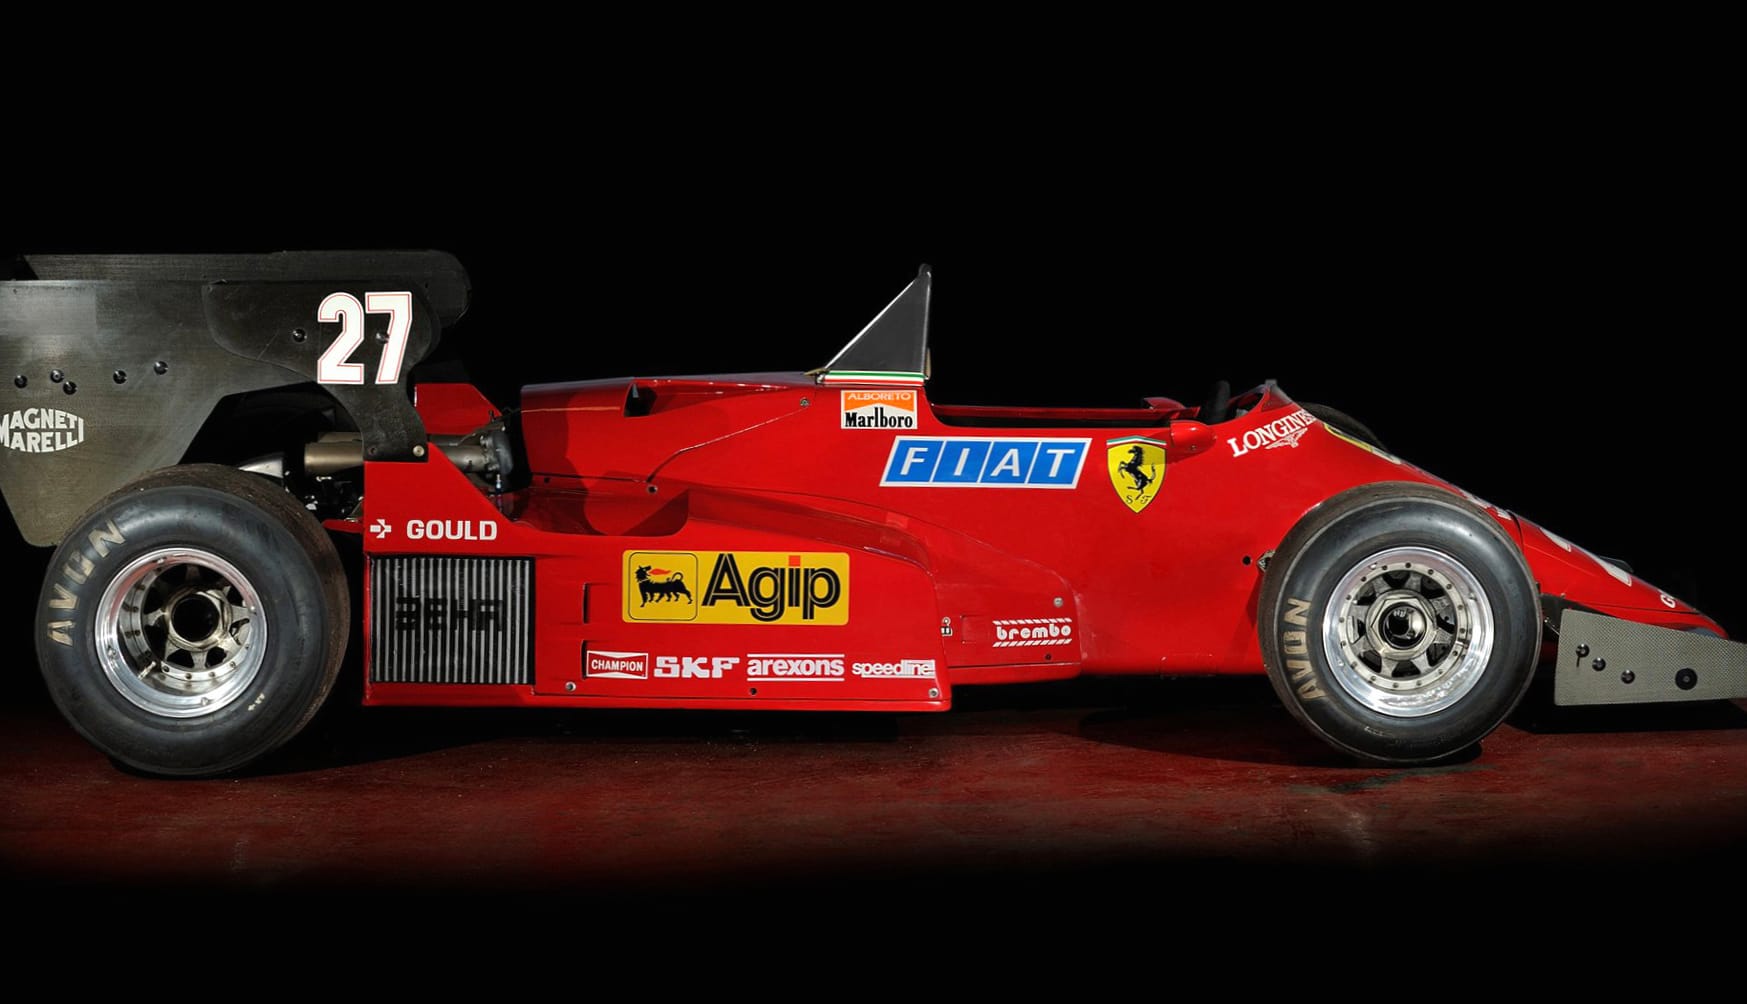 Ferrari 126 C4 at 1024 x 1024 iPad size wallpapers HD quality